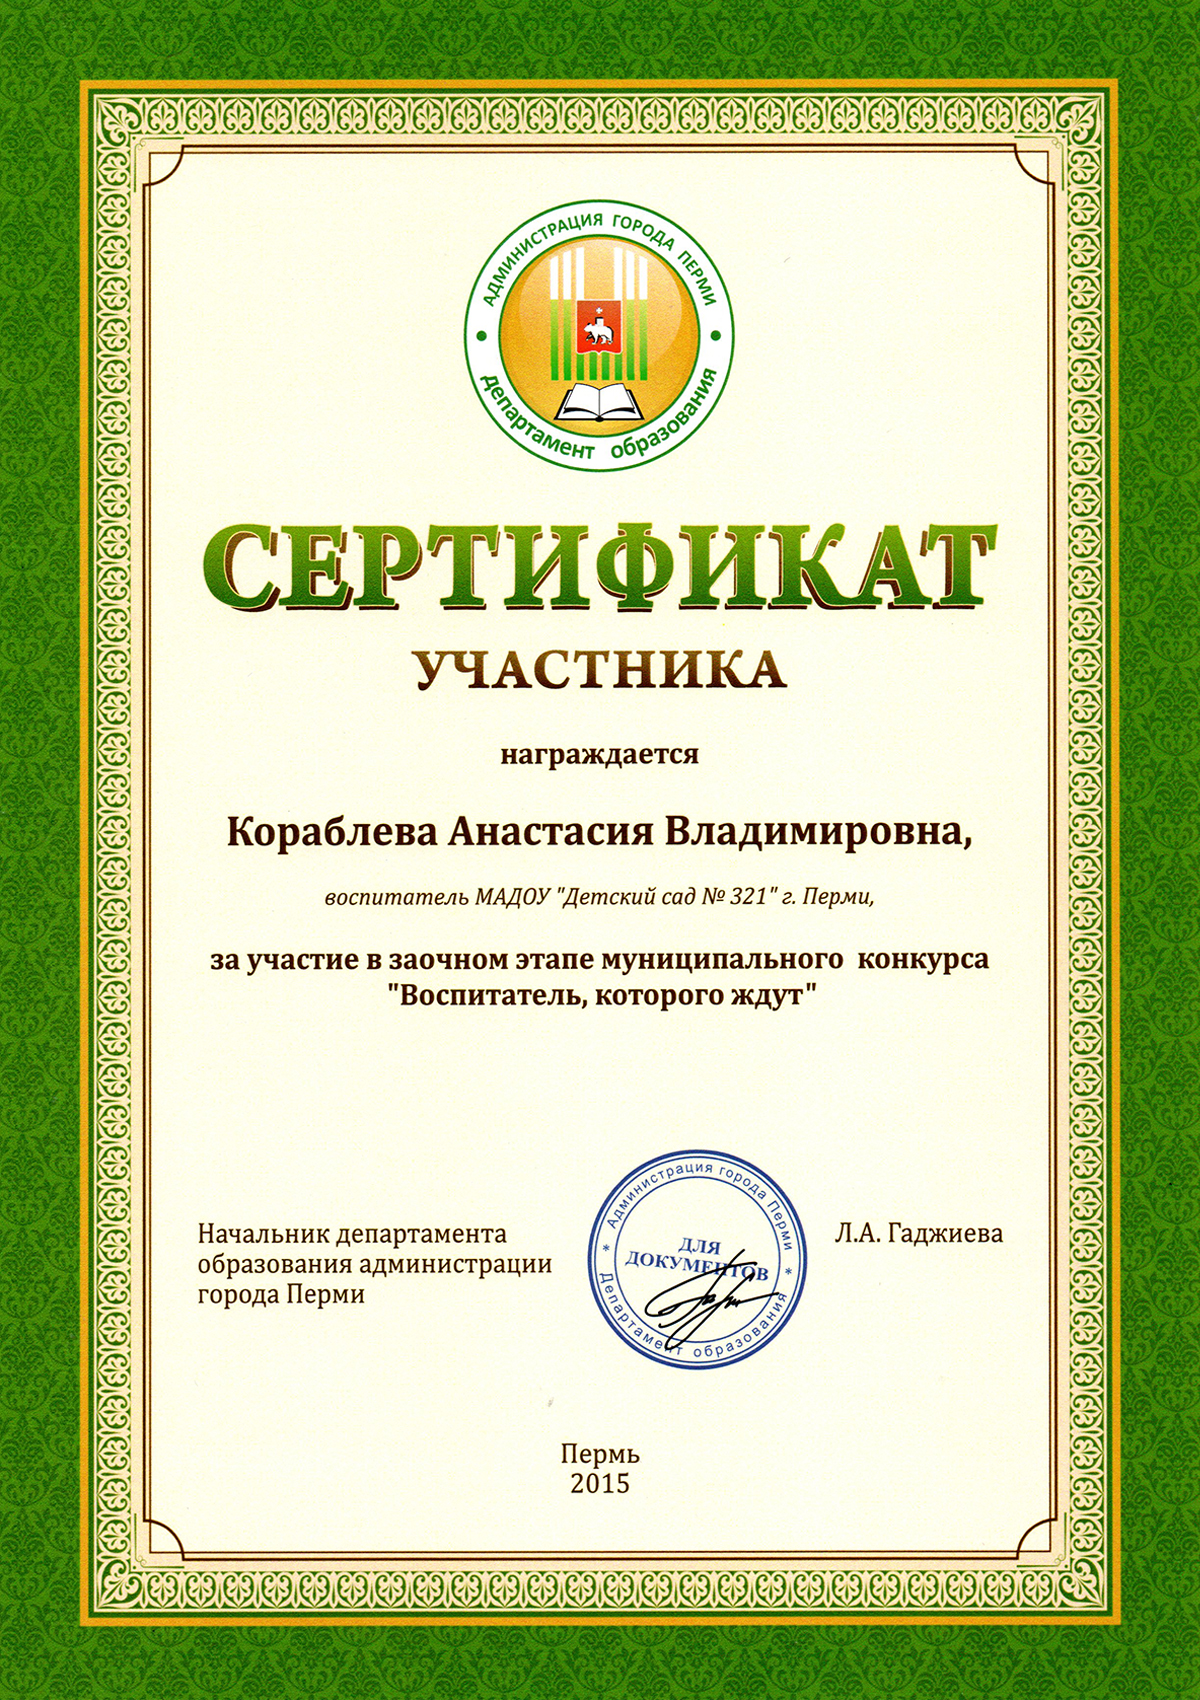 Сертификат участника профессионального конкурса.